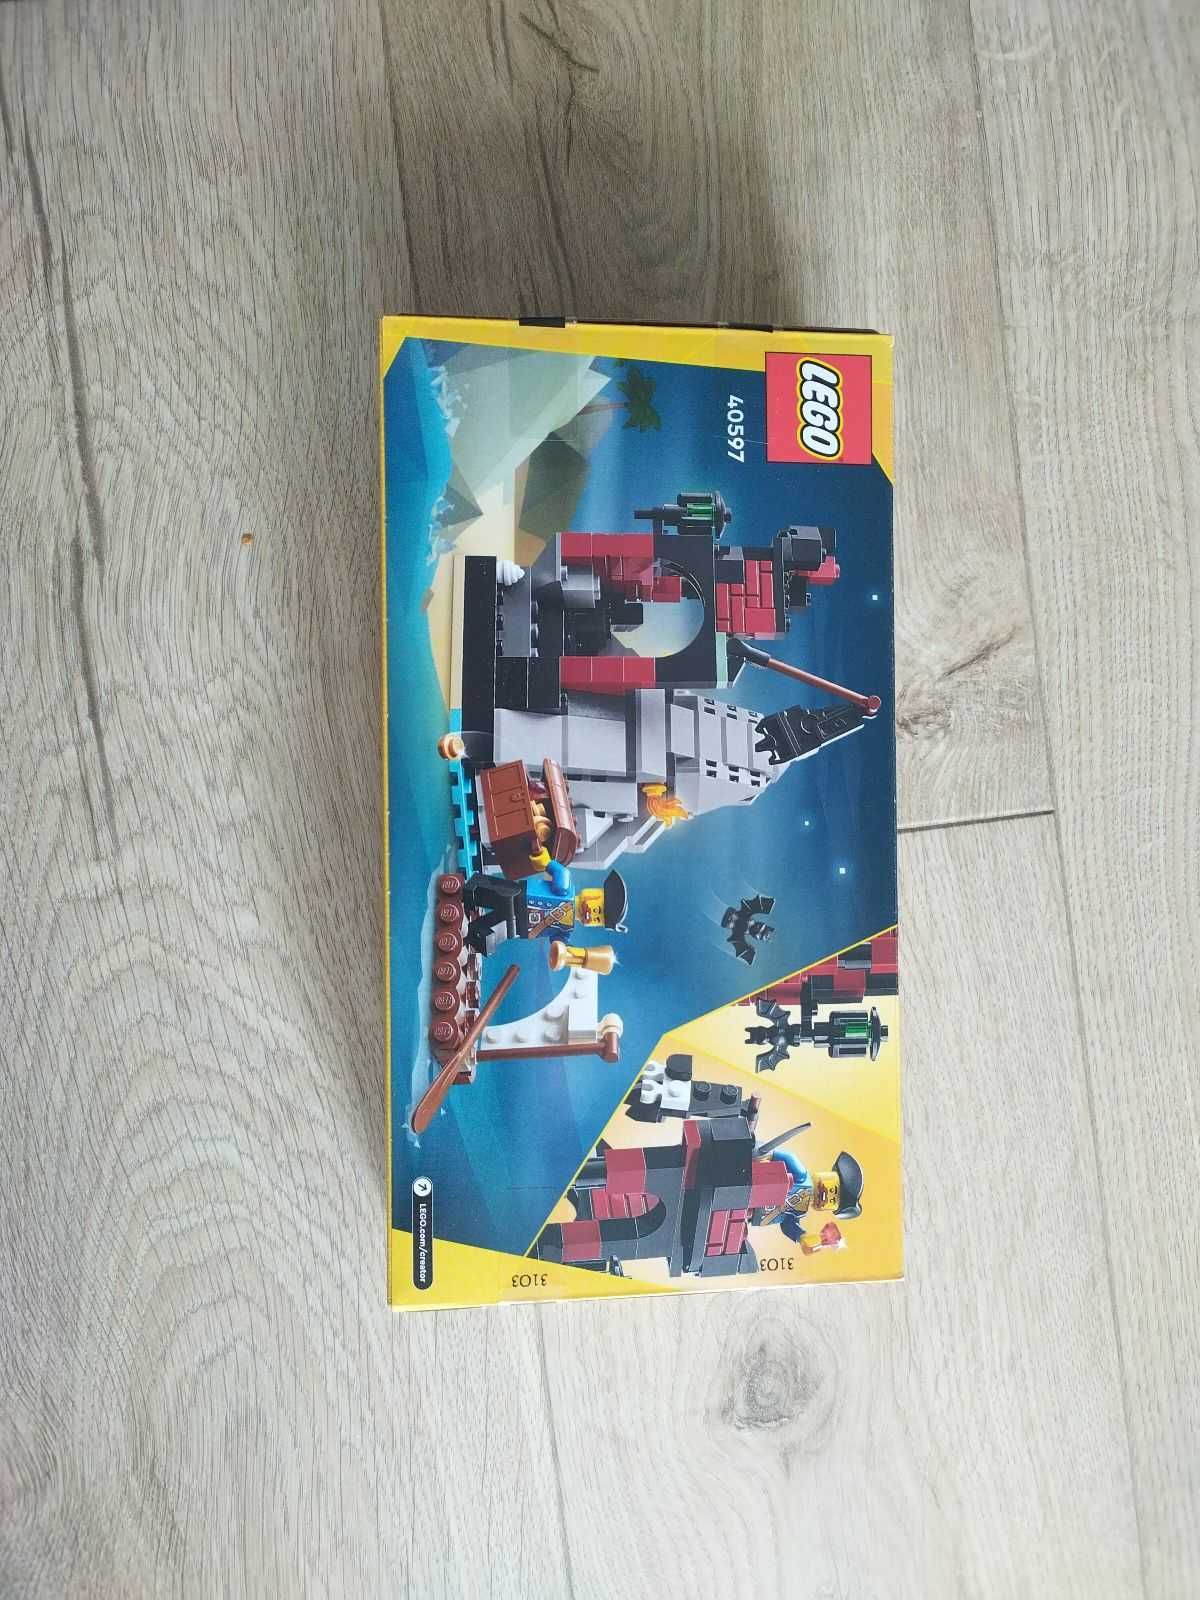 Nowy, Lego Creator 40597 straszna wyspa piratów